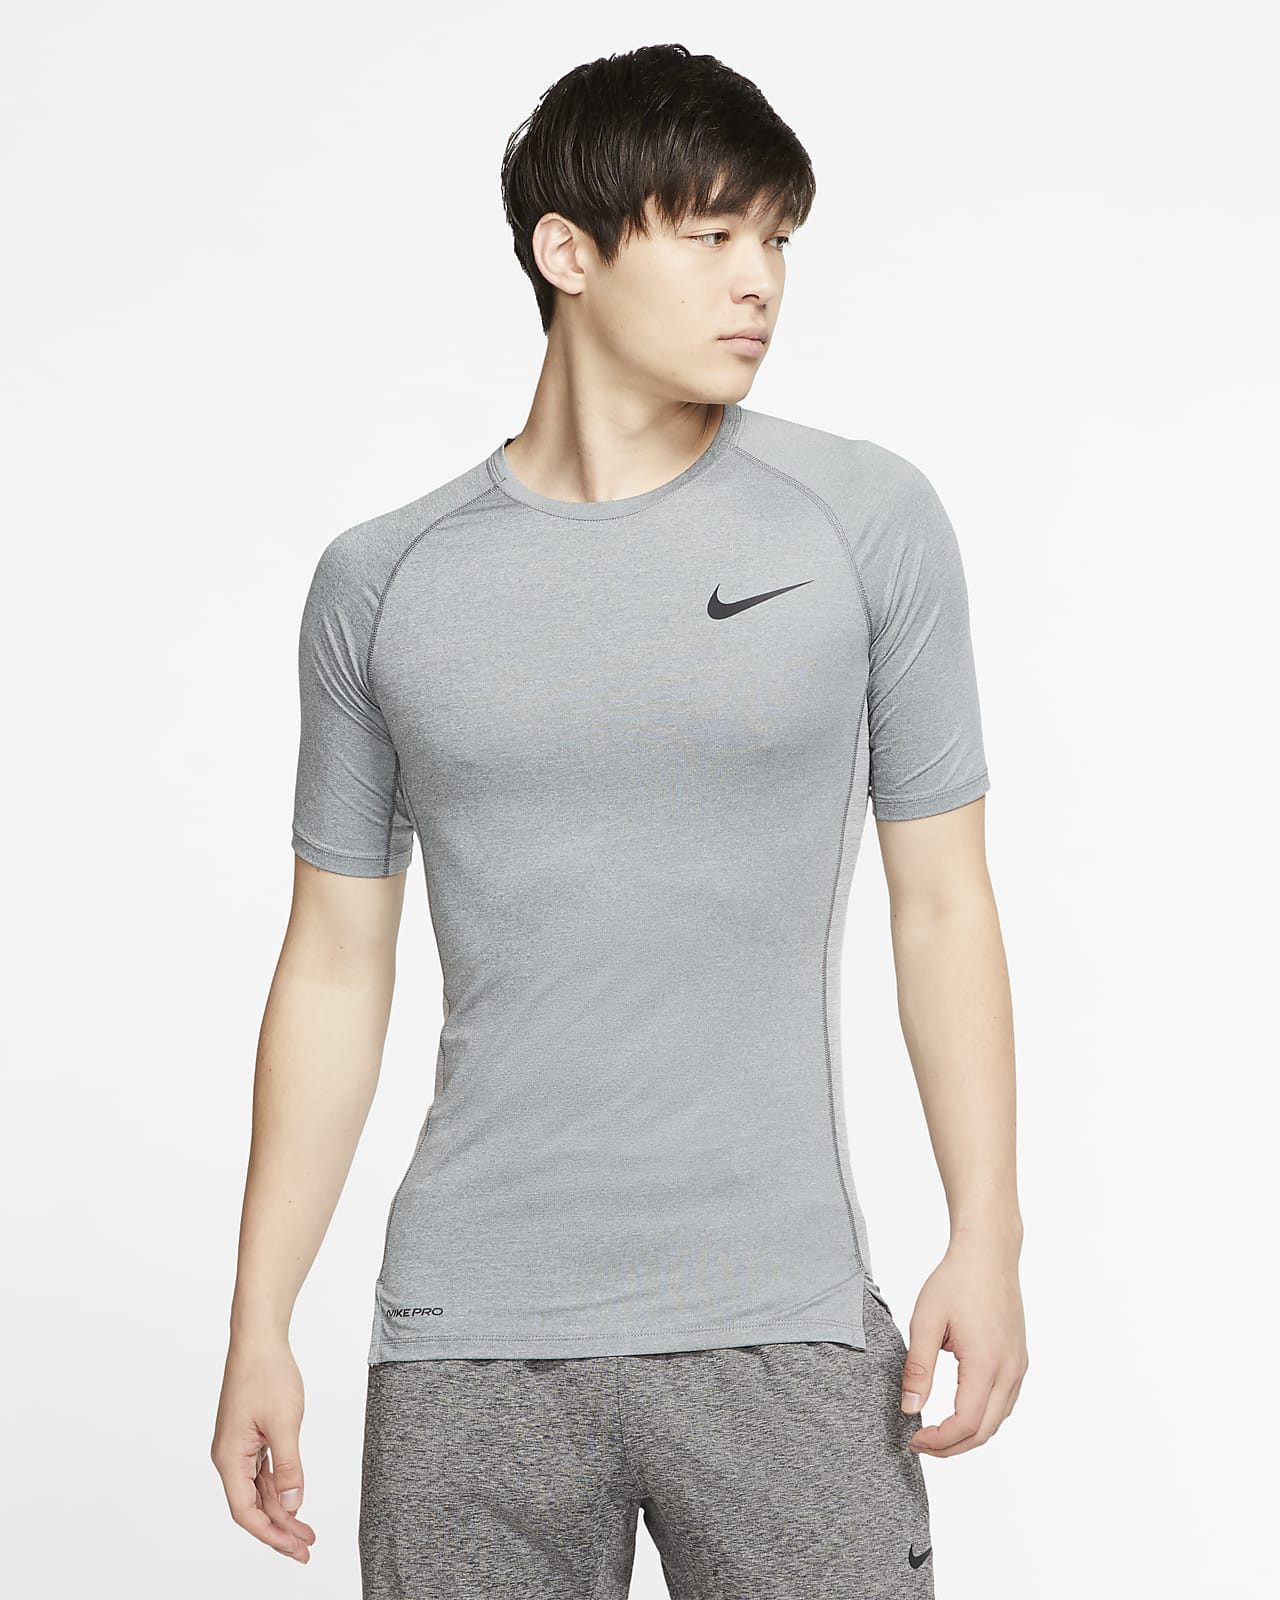 Nike Pro Men's Short-Sleeve Top. Nike PH